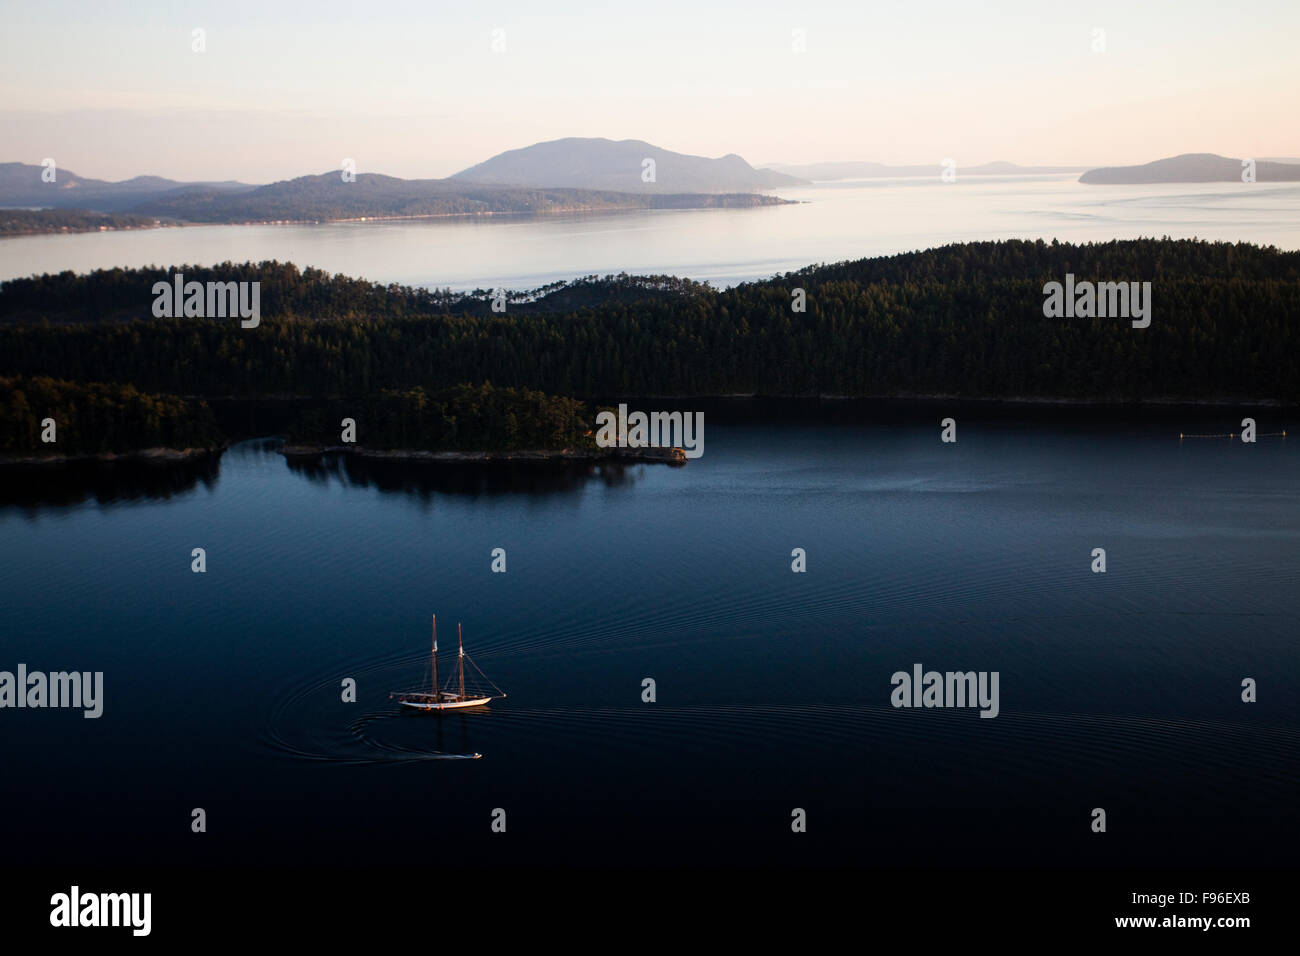 Vistas aéreas de las numerosas islas frente a la costa del estado de Washington al anochecer. Foto de stock